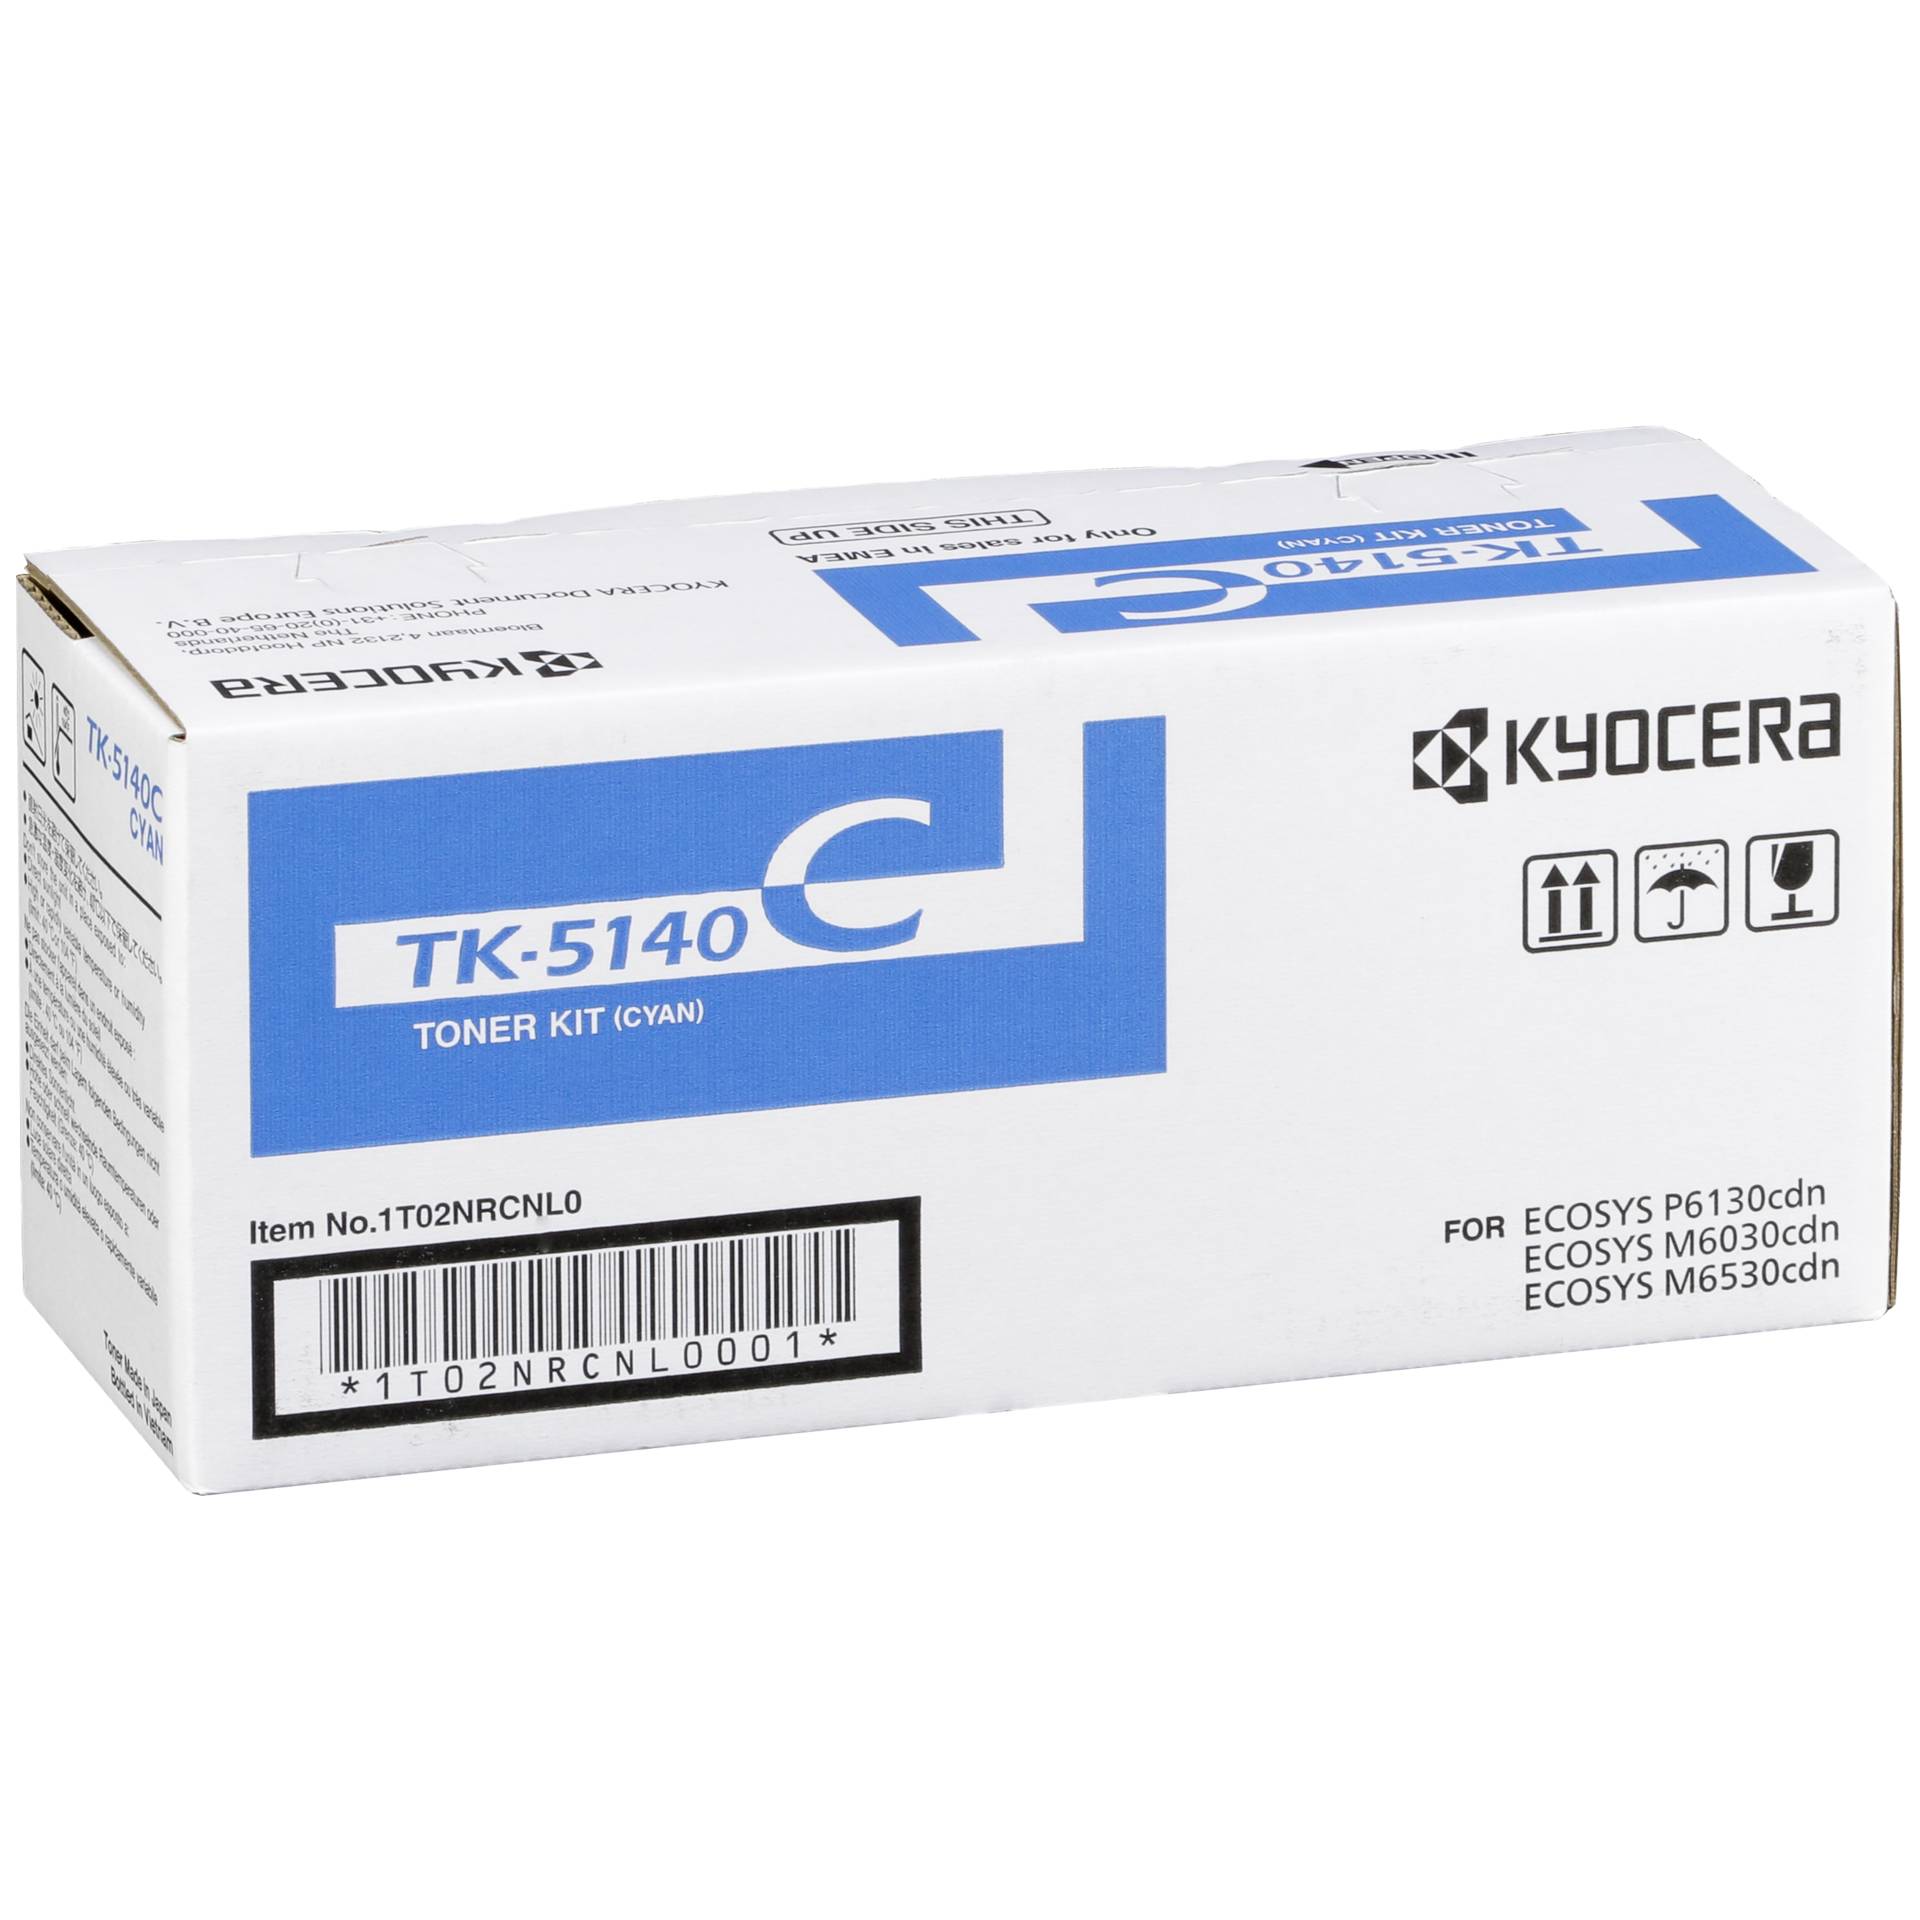 Kyocera cartuccia TK-5140 ciano